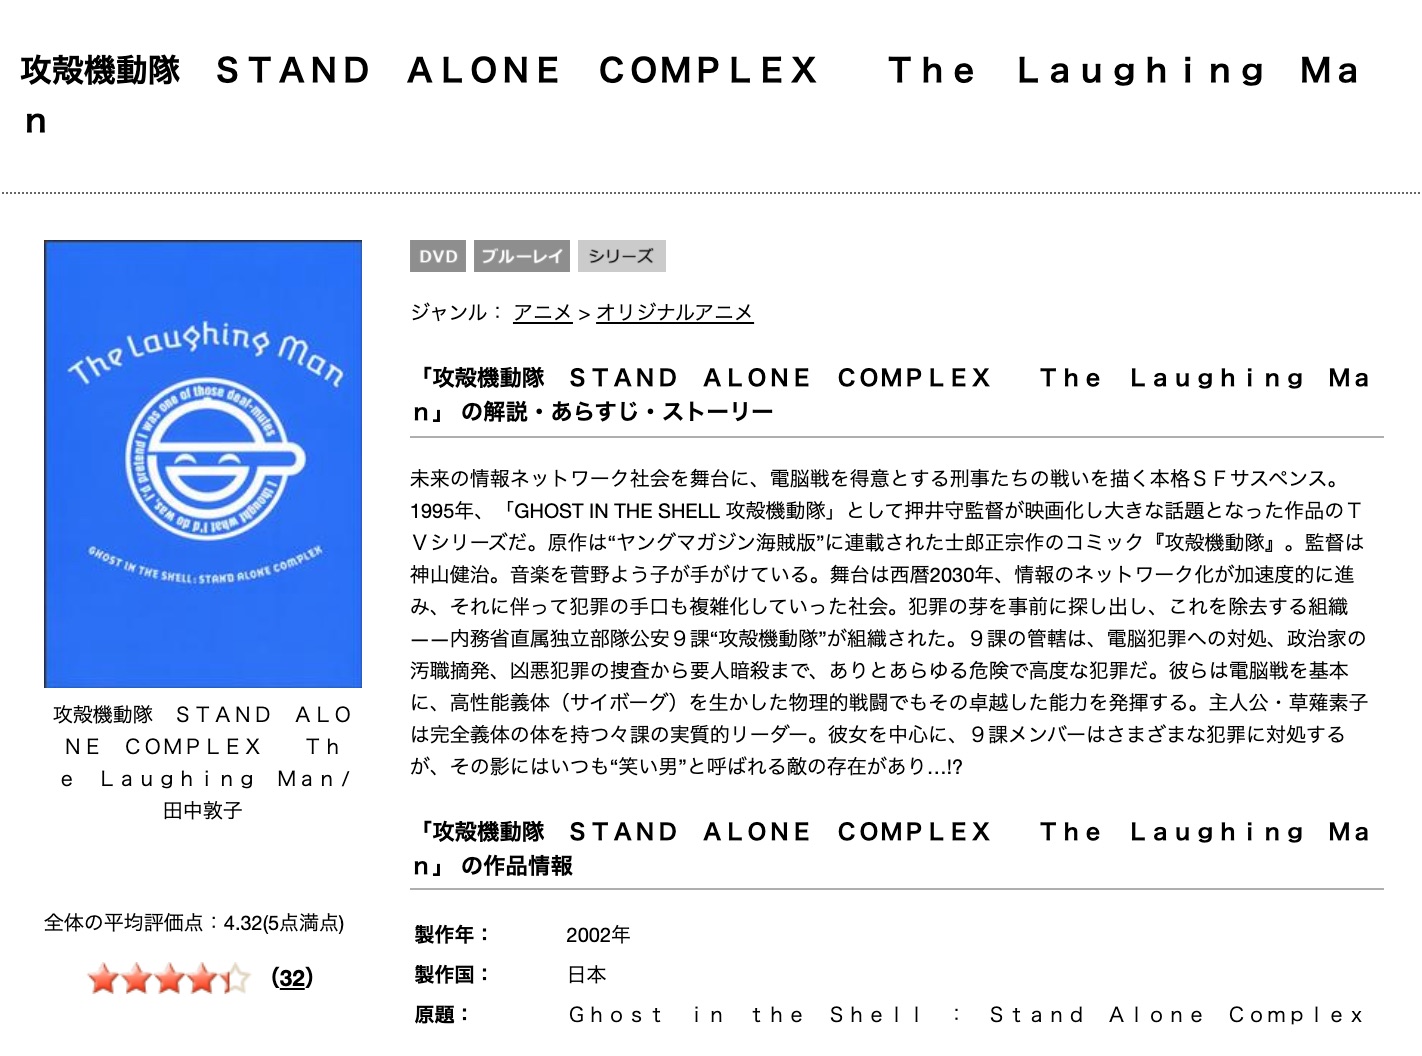 攻殻機動隊 Stand Alone Complex The Laughing Manの動画を無料 フル視聴できるサイトまとめ 午後のアニch アニメの動画情報や考察まとめ